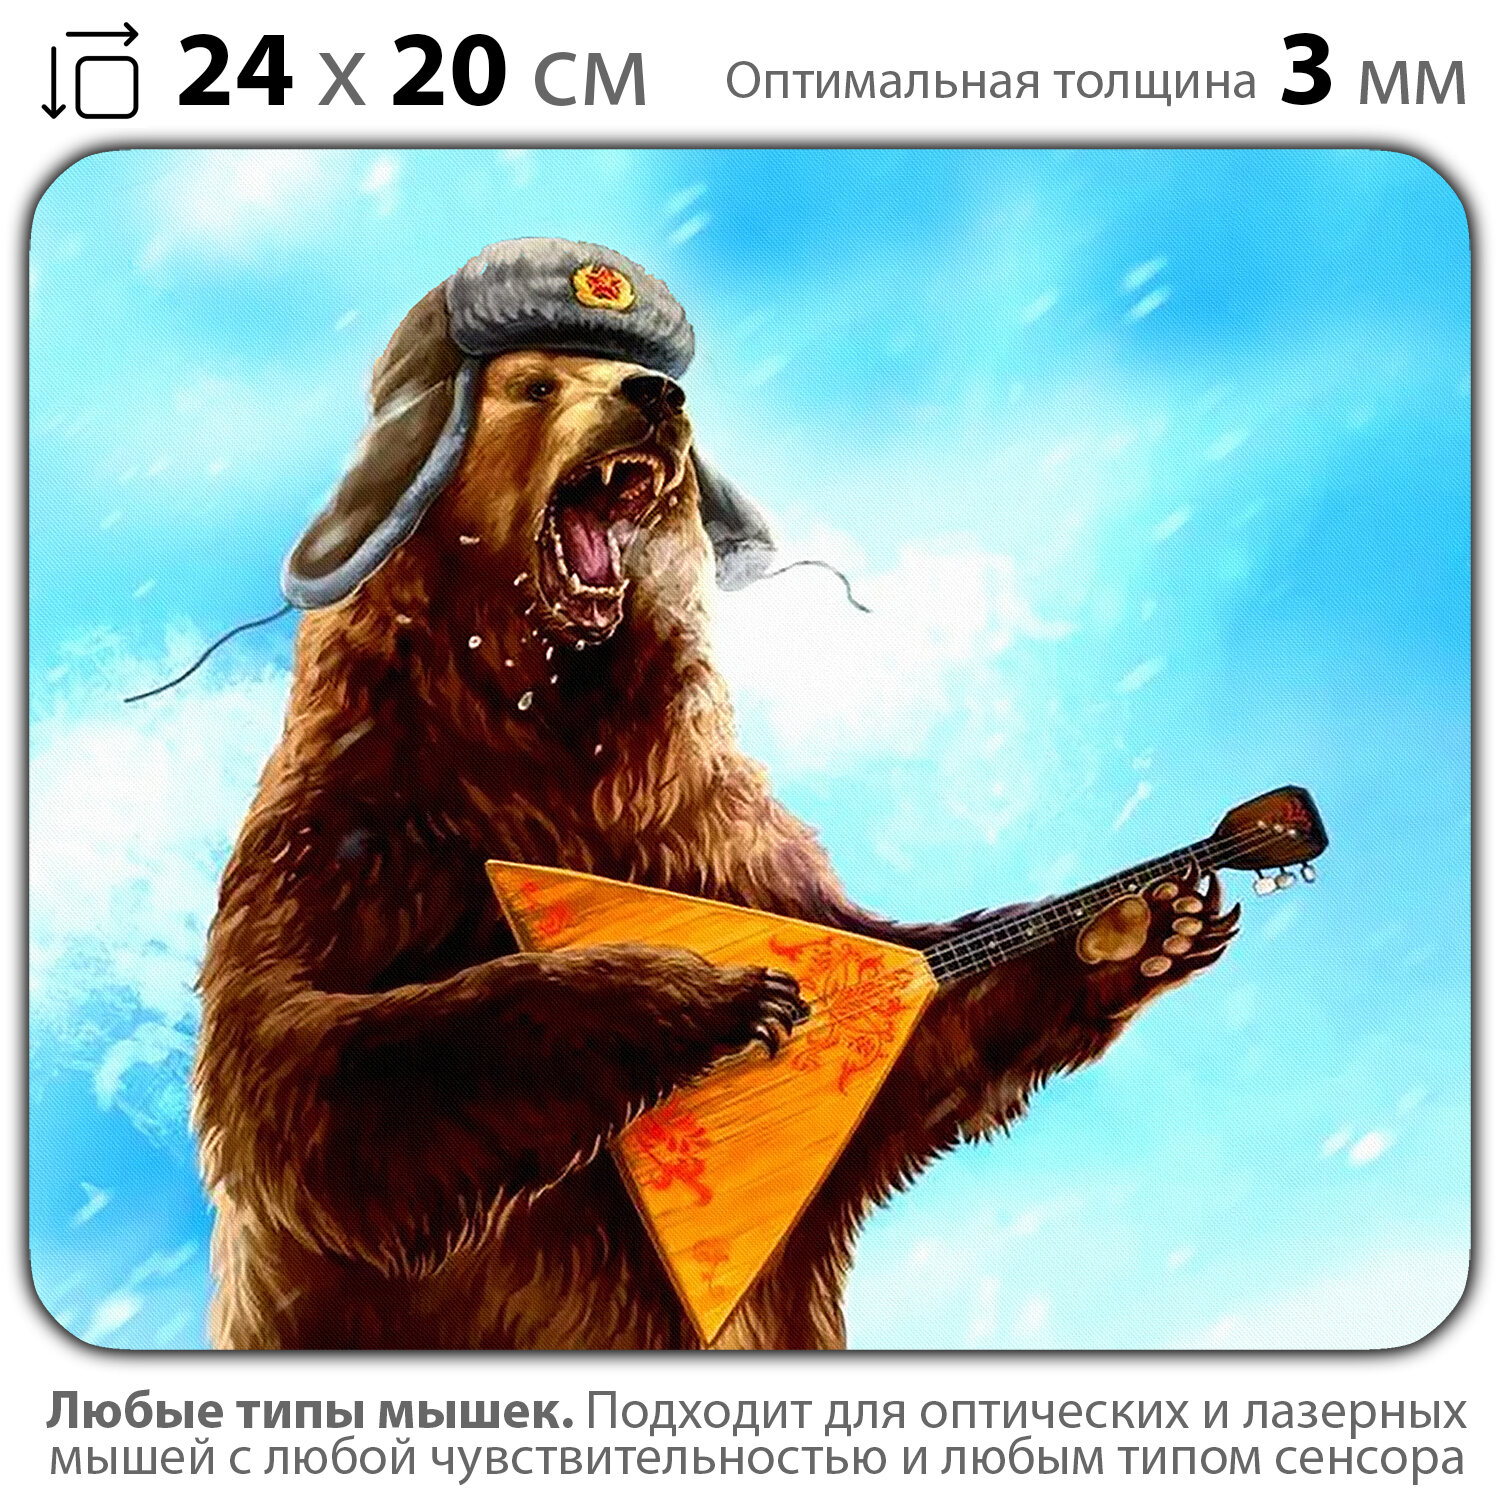 Коврик для мыши "Русский медведь с балалайкой" (24 x 20 см x 3 мм)